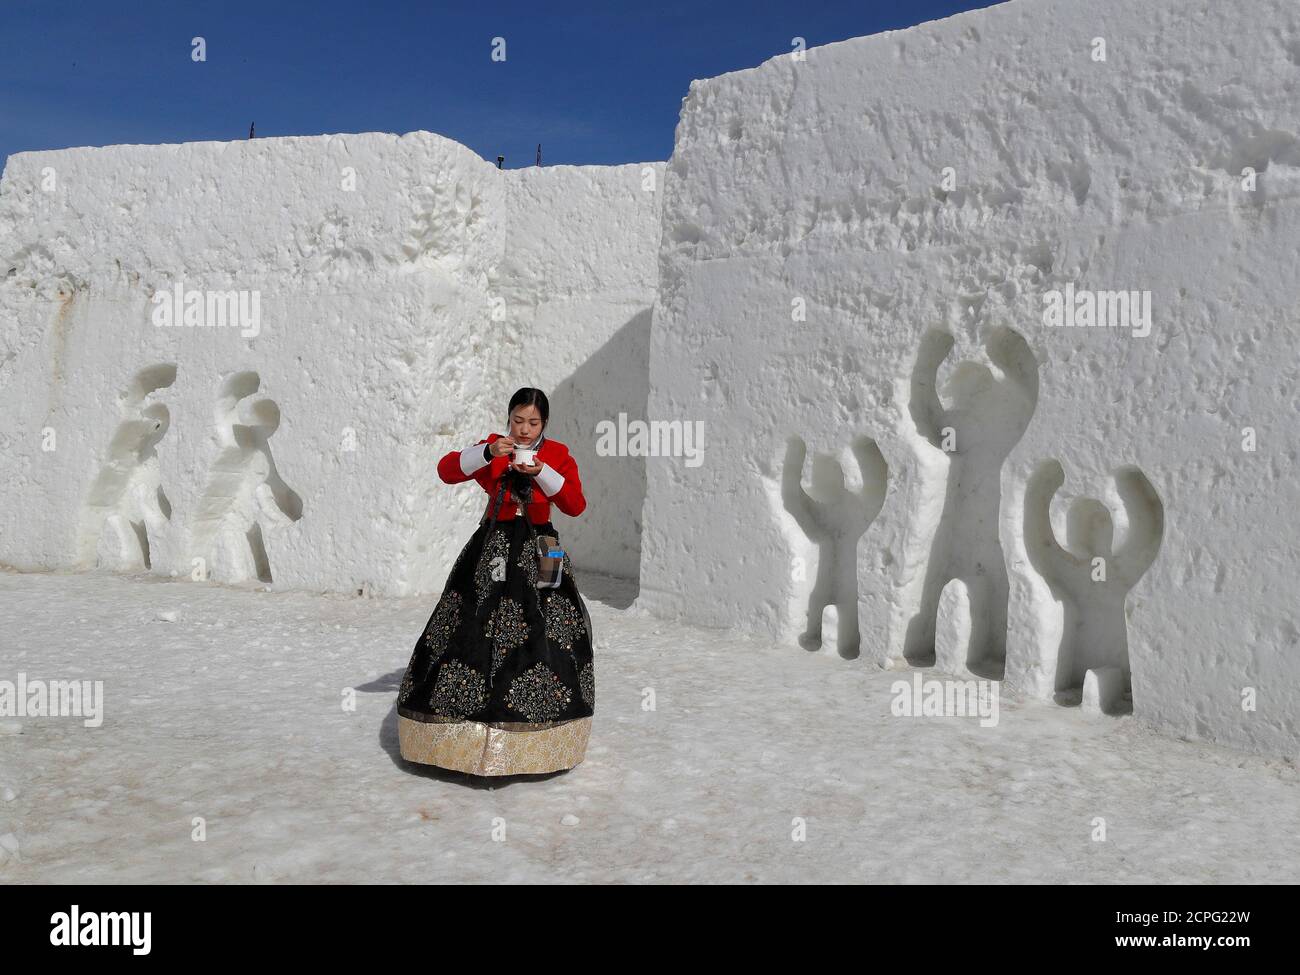 Una mujer vestida con ropa tradicional coreana come de arroz mientras celebra el año Nuevo Lunar entre esculturas de hielo en Pyeongchang, Corea del Sur, 16 febrero de